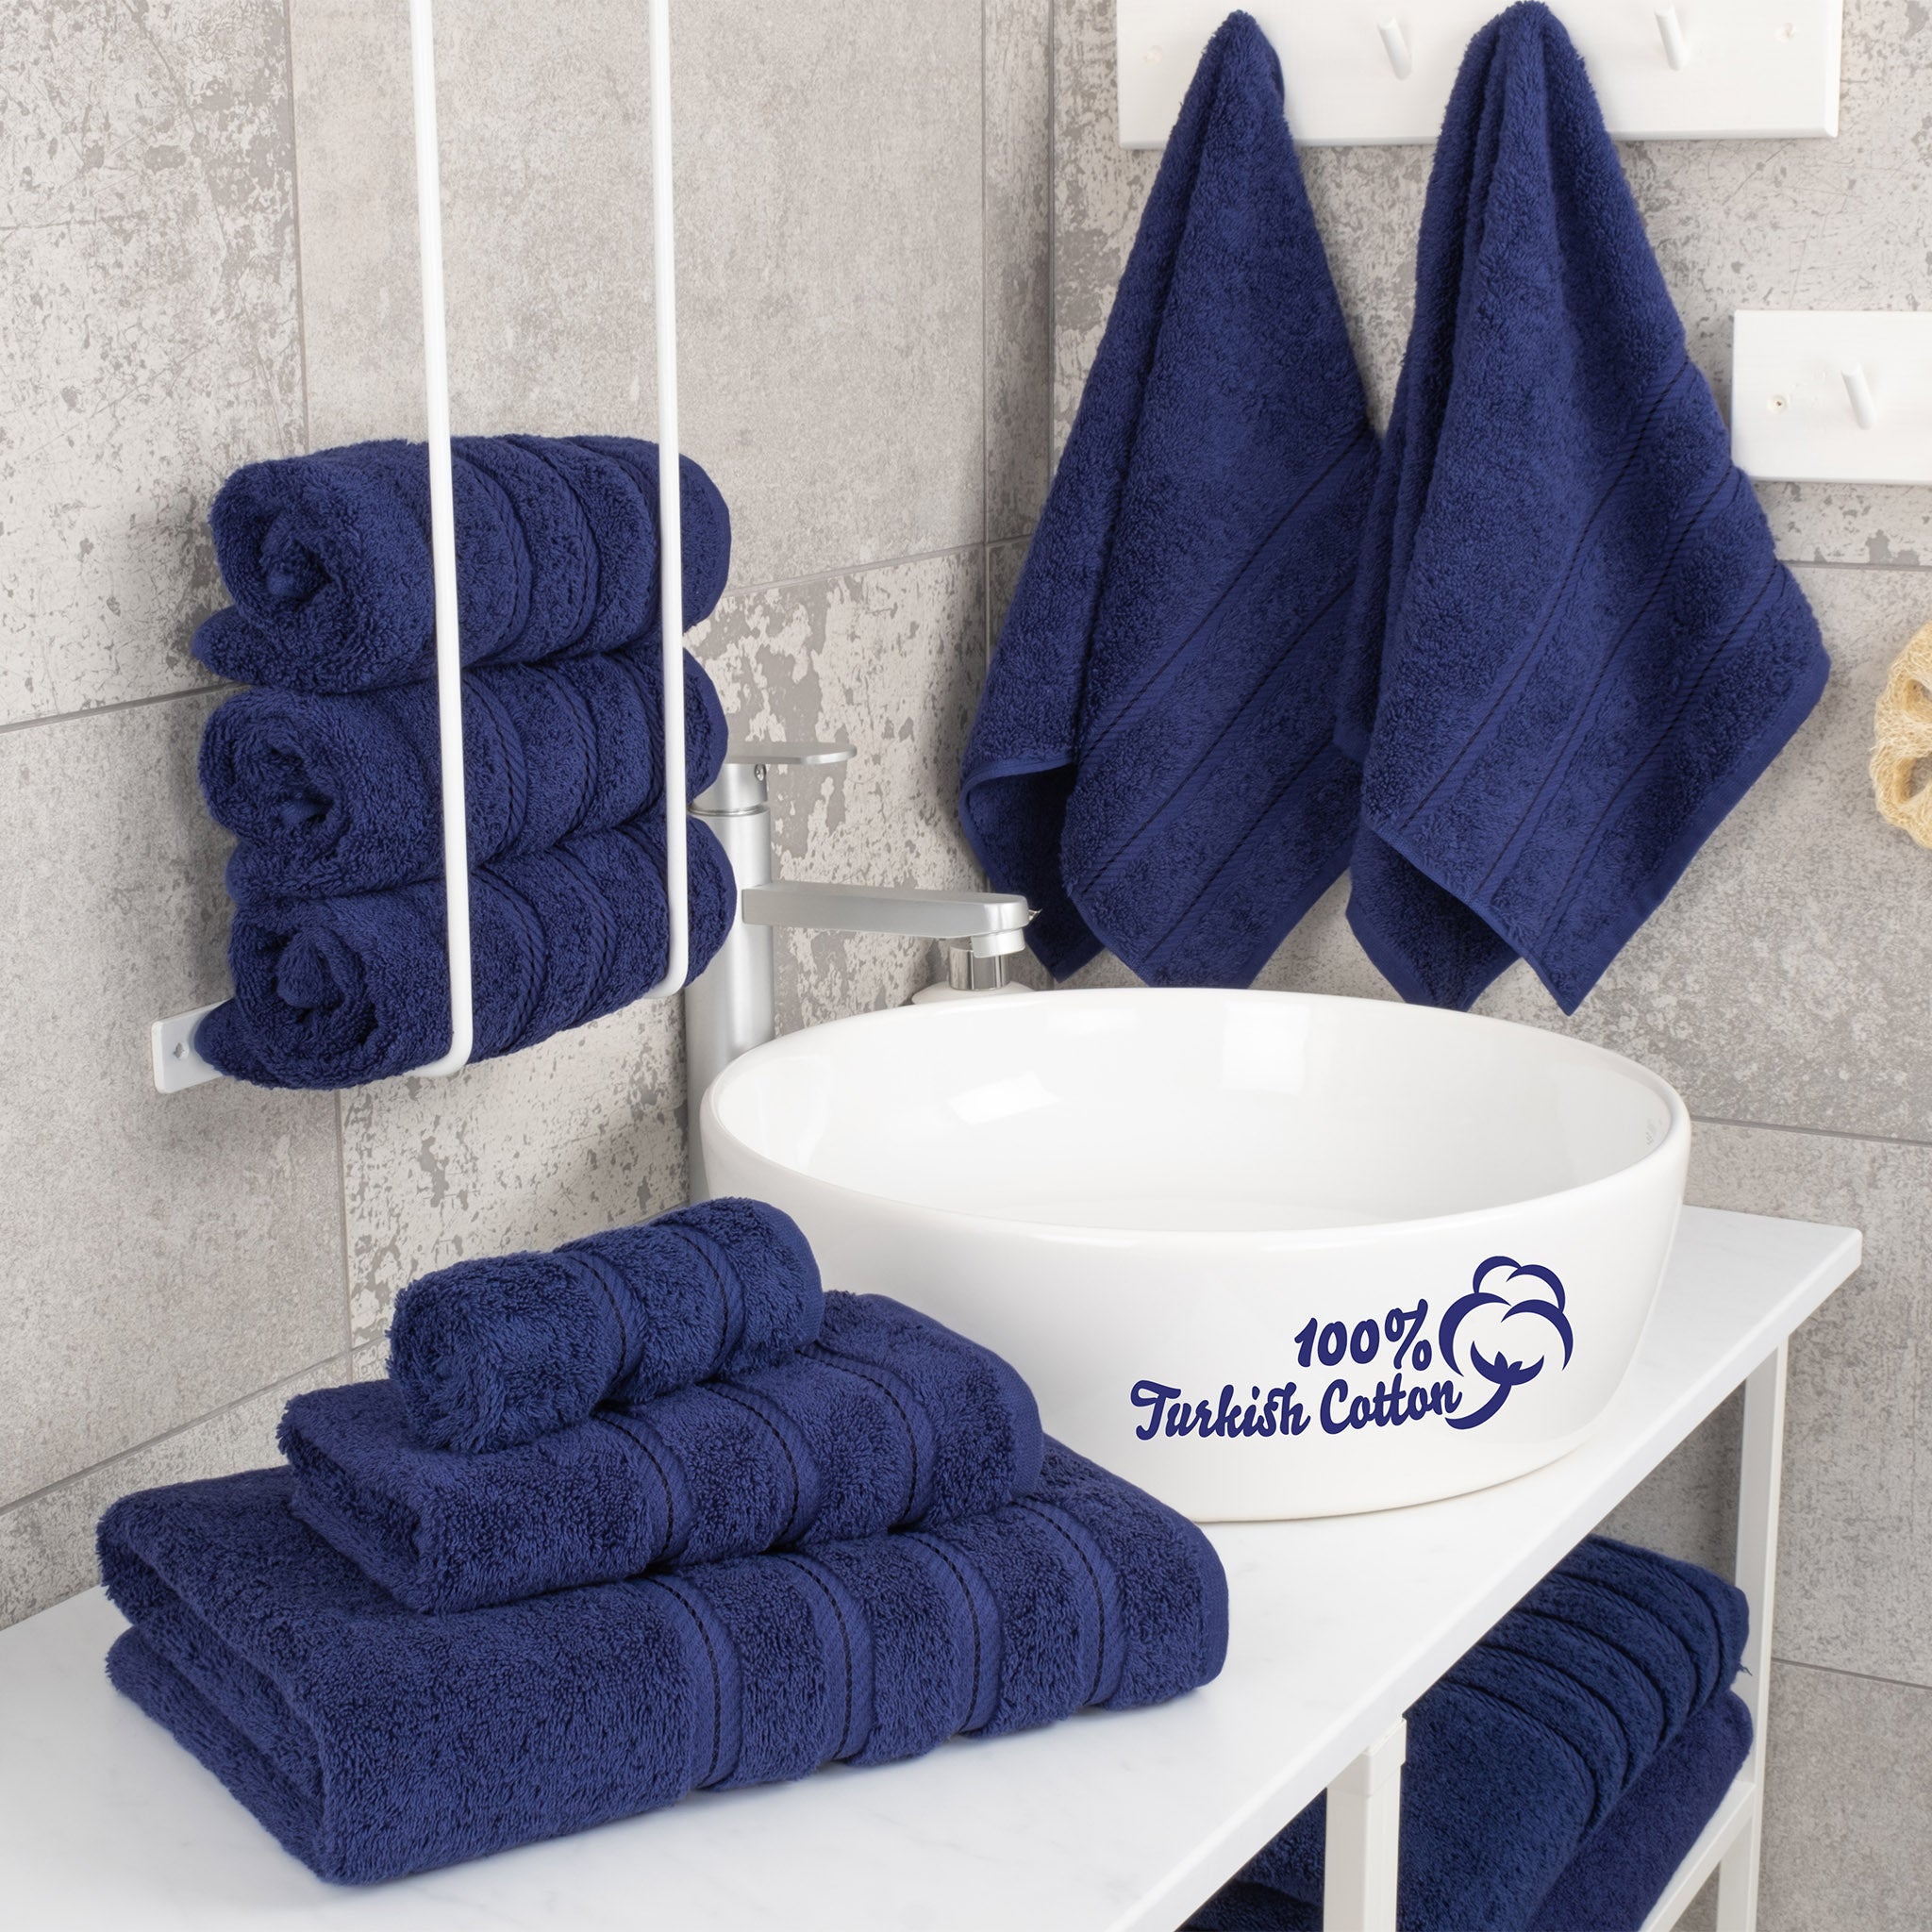 American Soft Linen 100% Turkish Cotton 6 Piece Towel Set Wholesale navy-blue-2